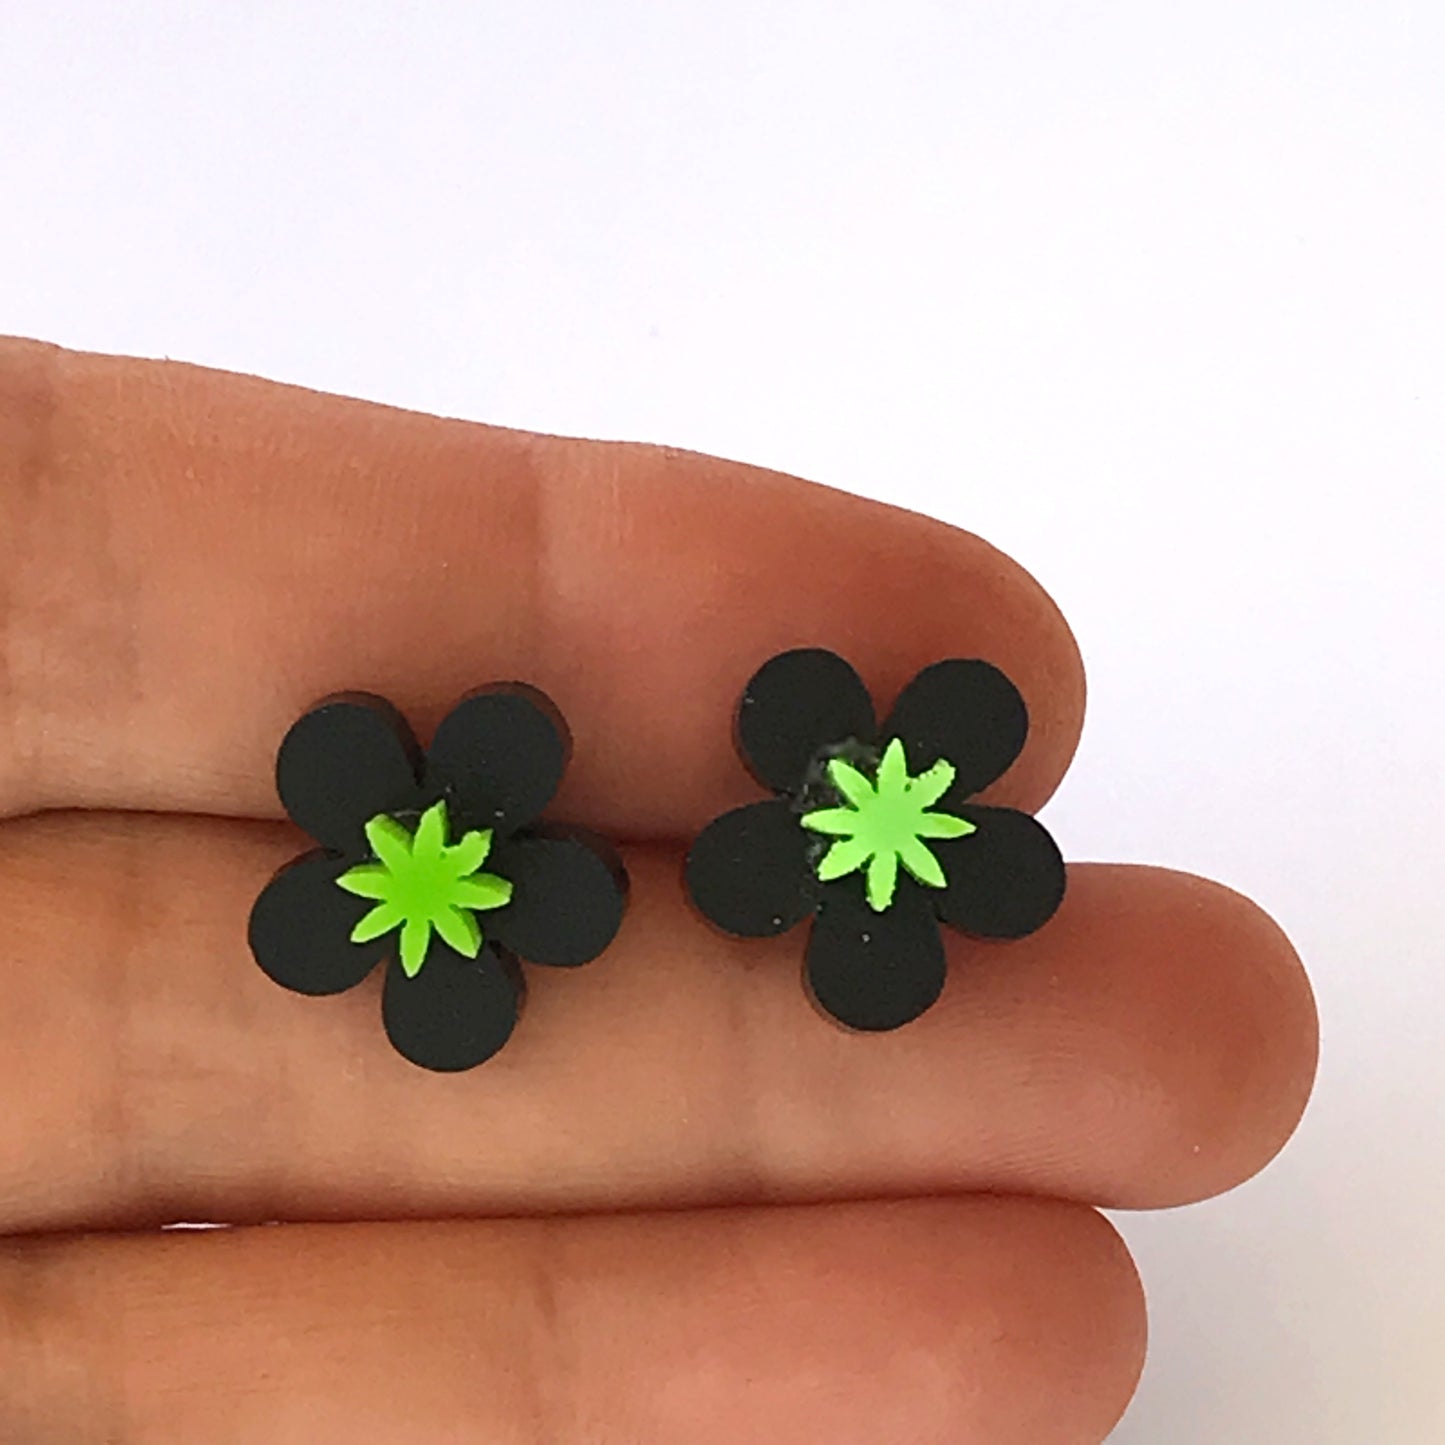 Flower laser cut acrylic earrings - daisy - black